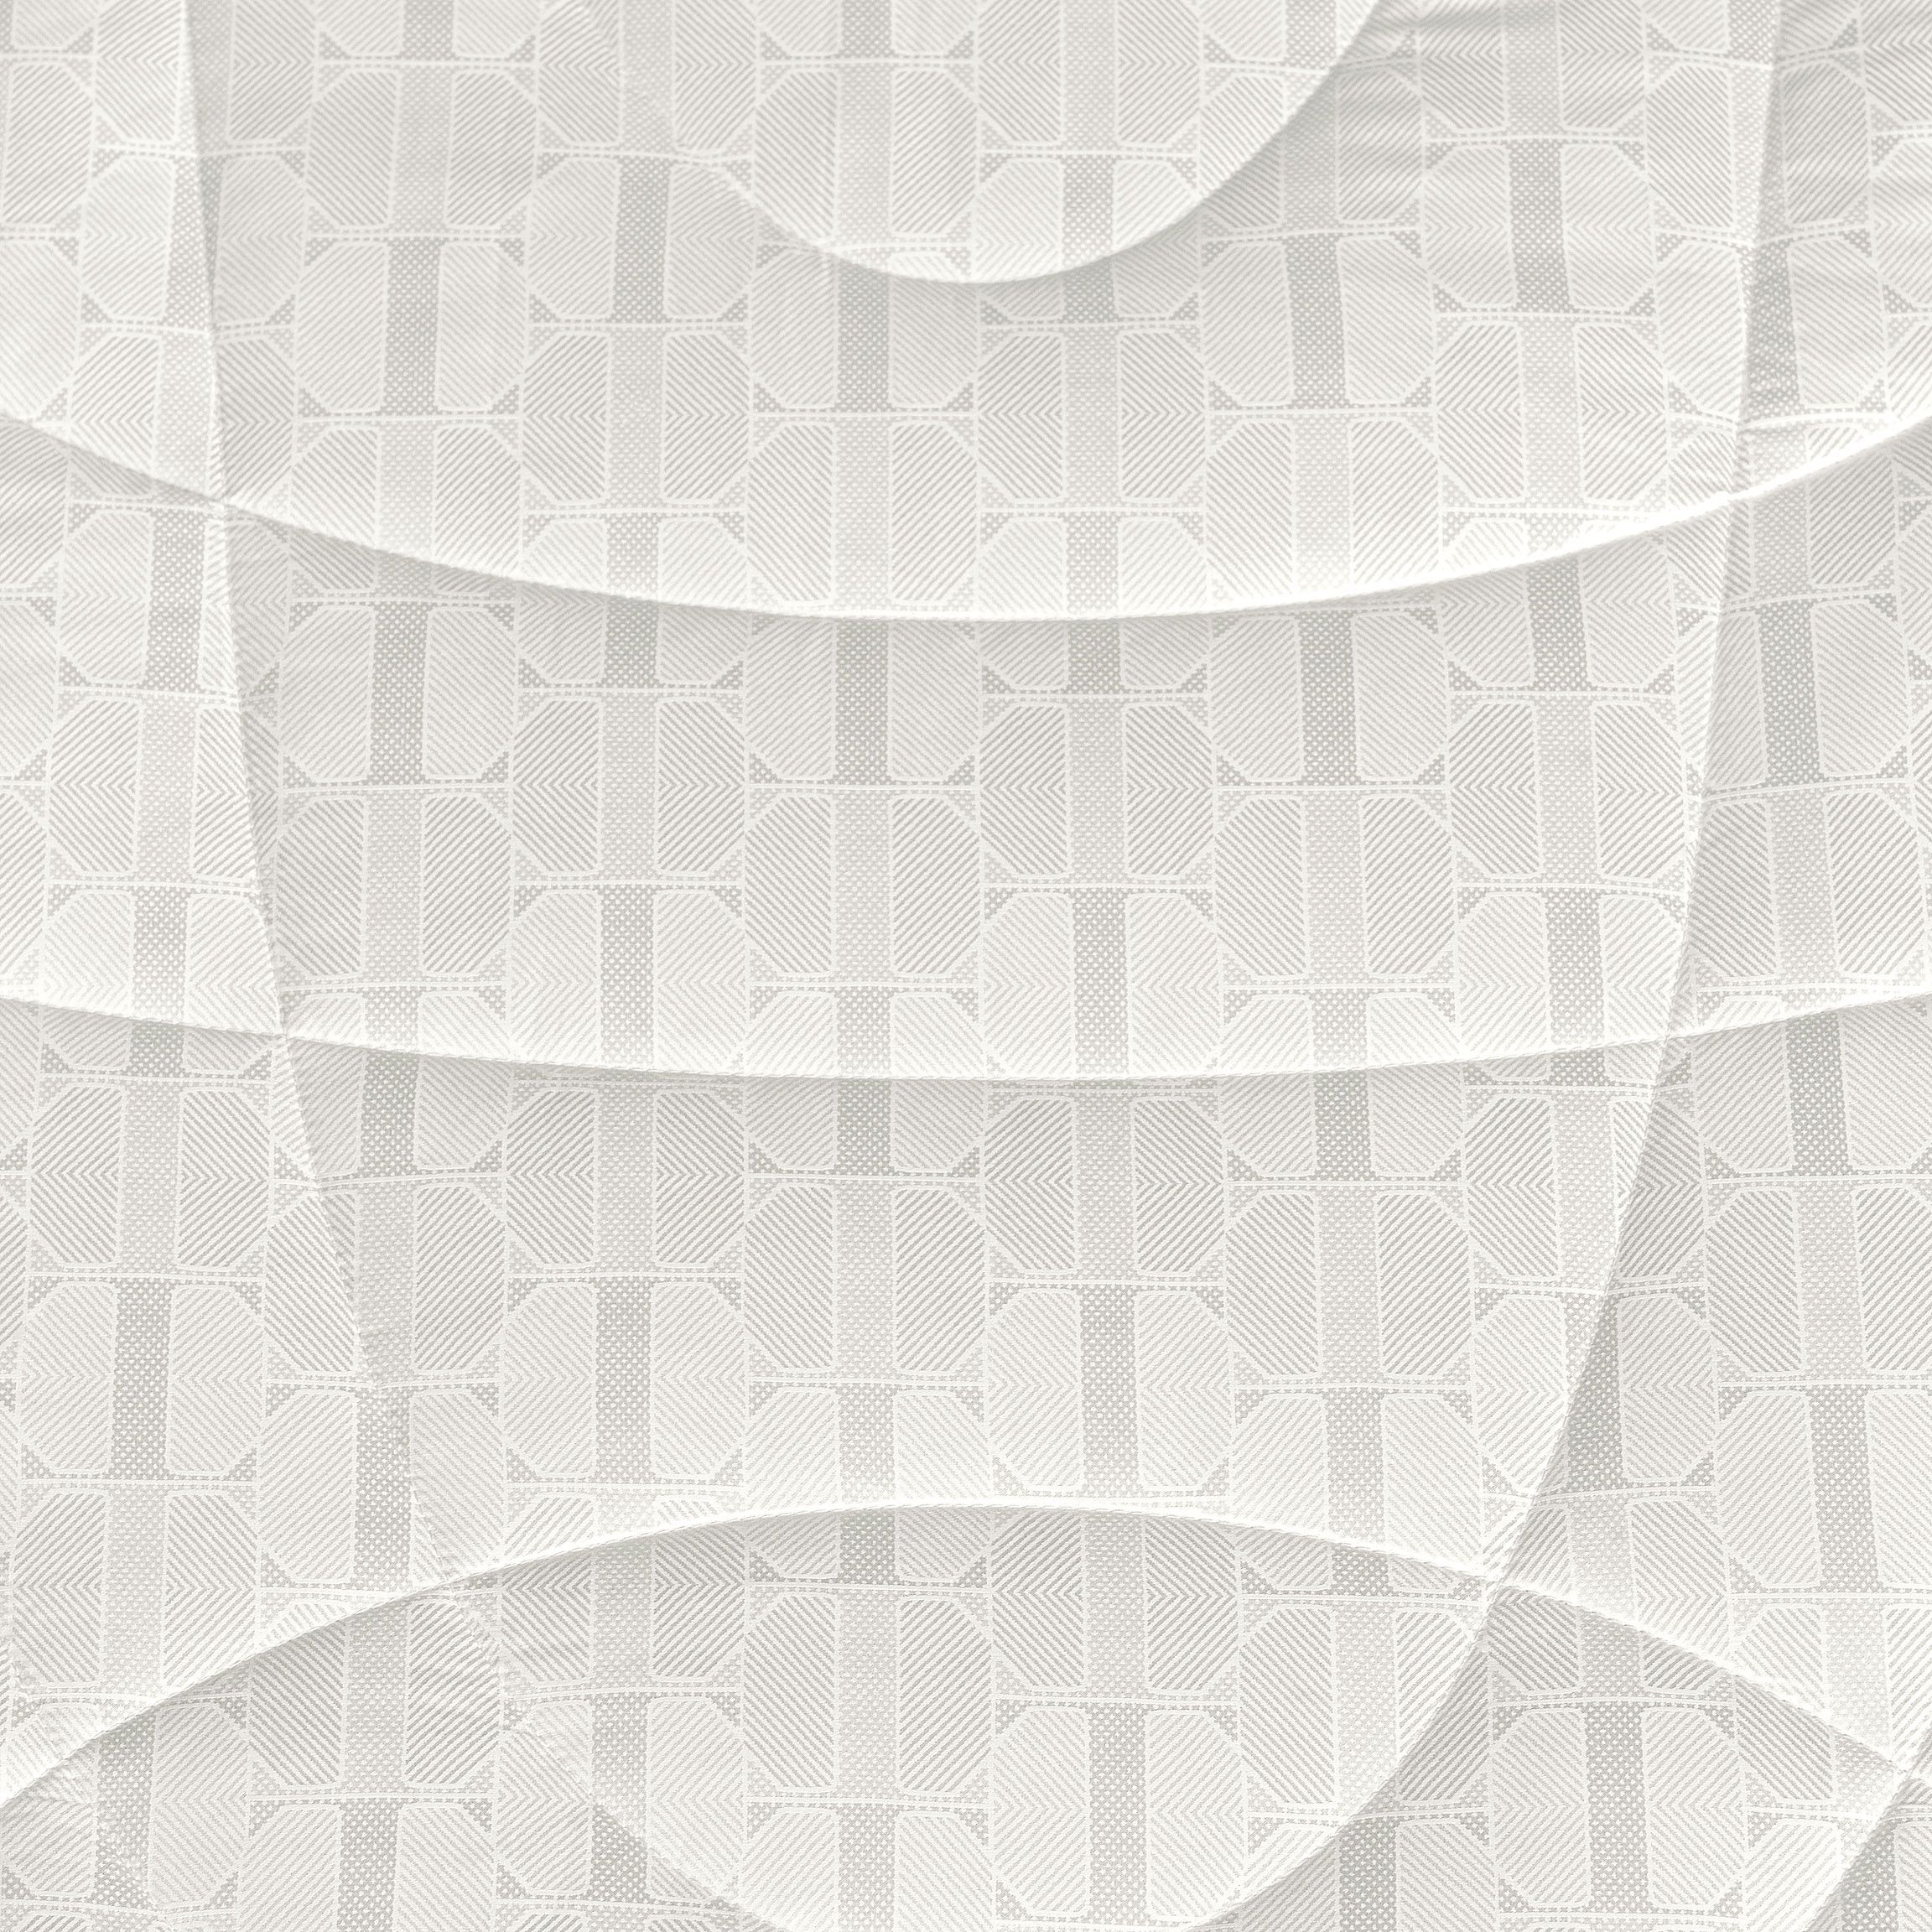 Одеяла Одеяло Селеста  - Фото